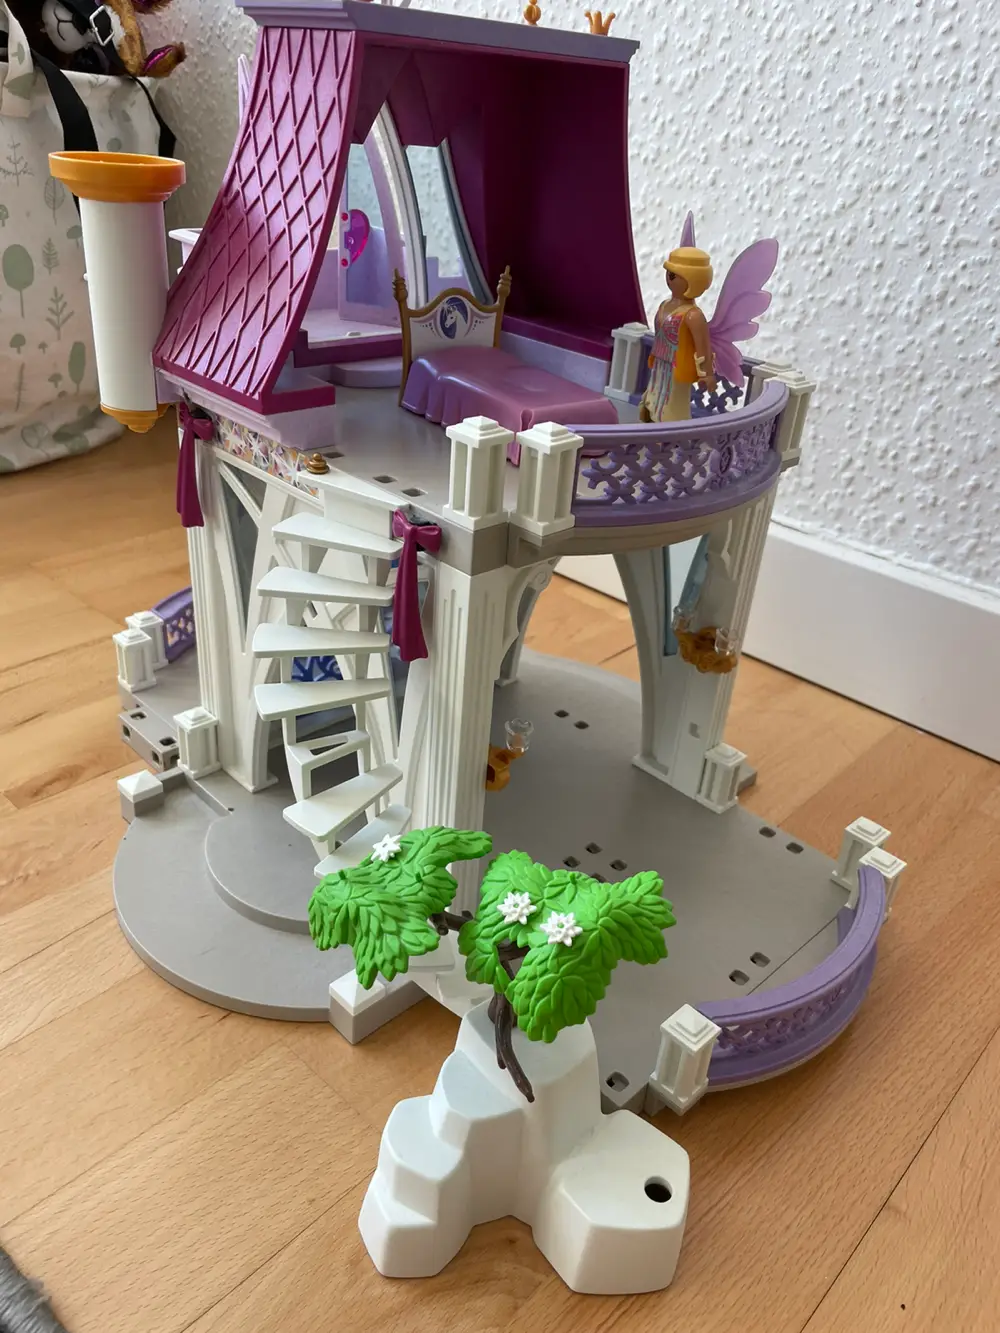 Køb Playmobil Fe slot af Irene på Reshopper · Shop secondhand børn, mor bolig